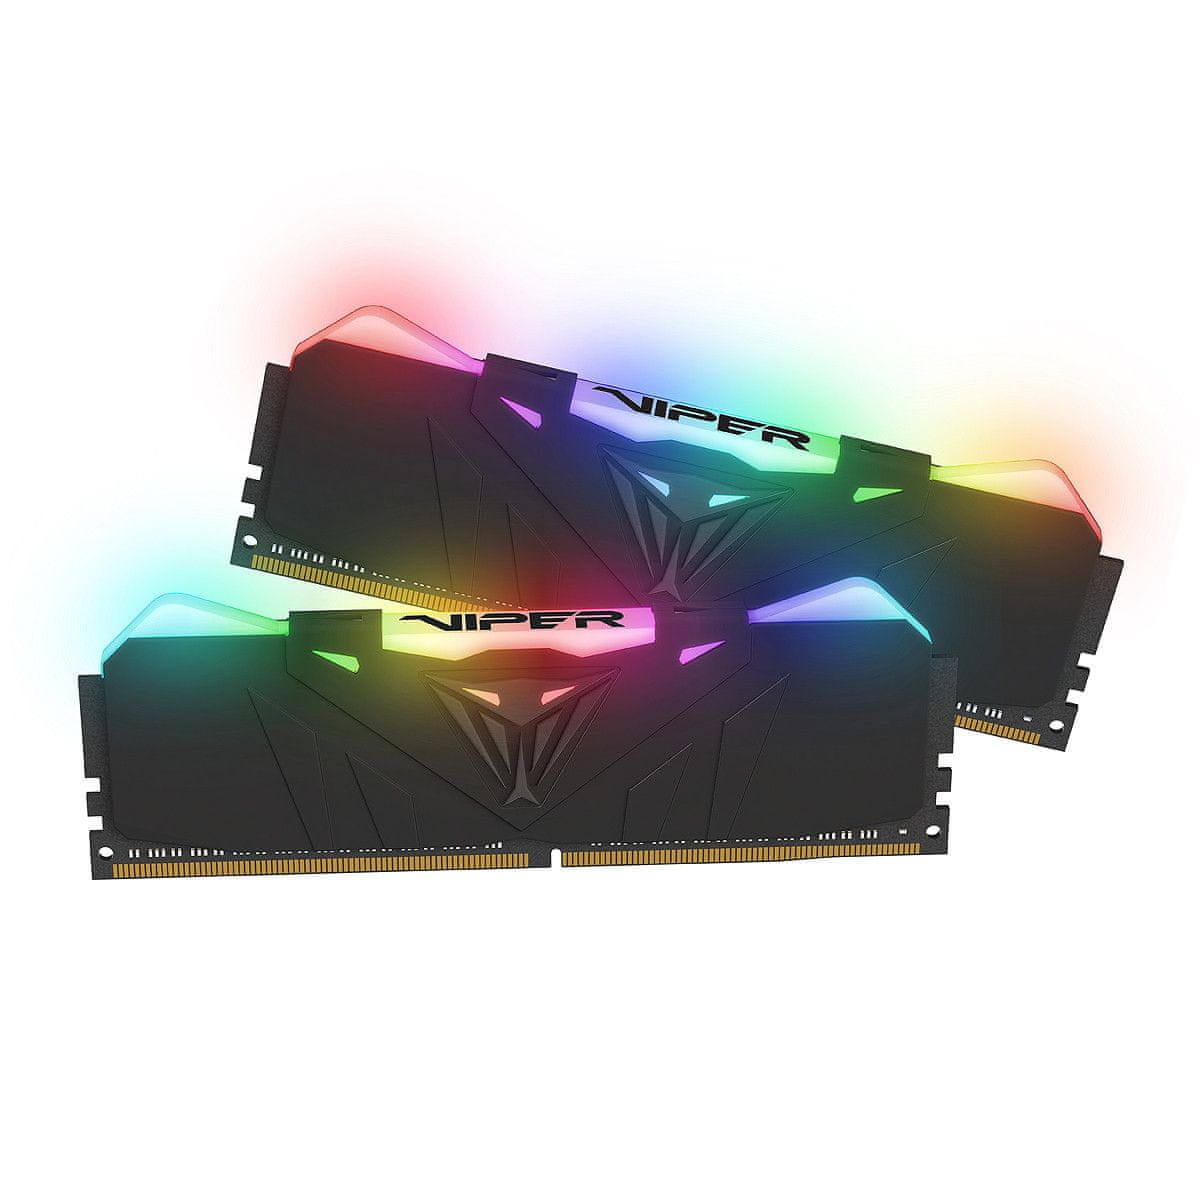 Patriot Viper RGB memorija (RAM), 16 GB (2x 8 GB), DDR4, 3200 DIMM  (PVR416G320C6K) | MALL.HR